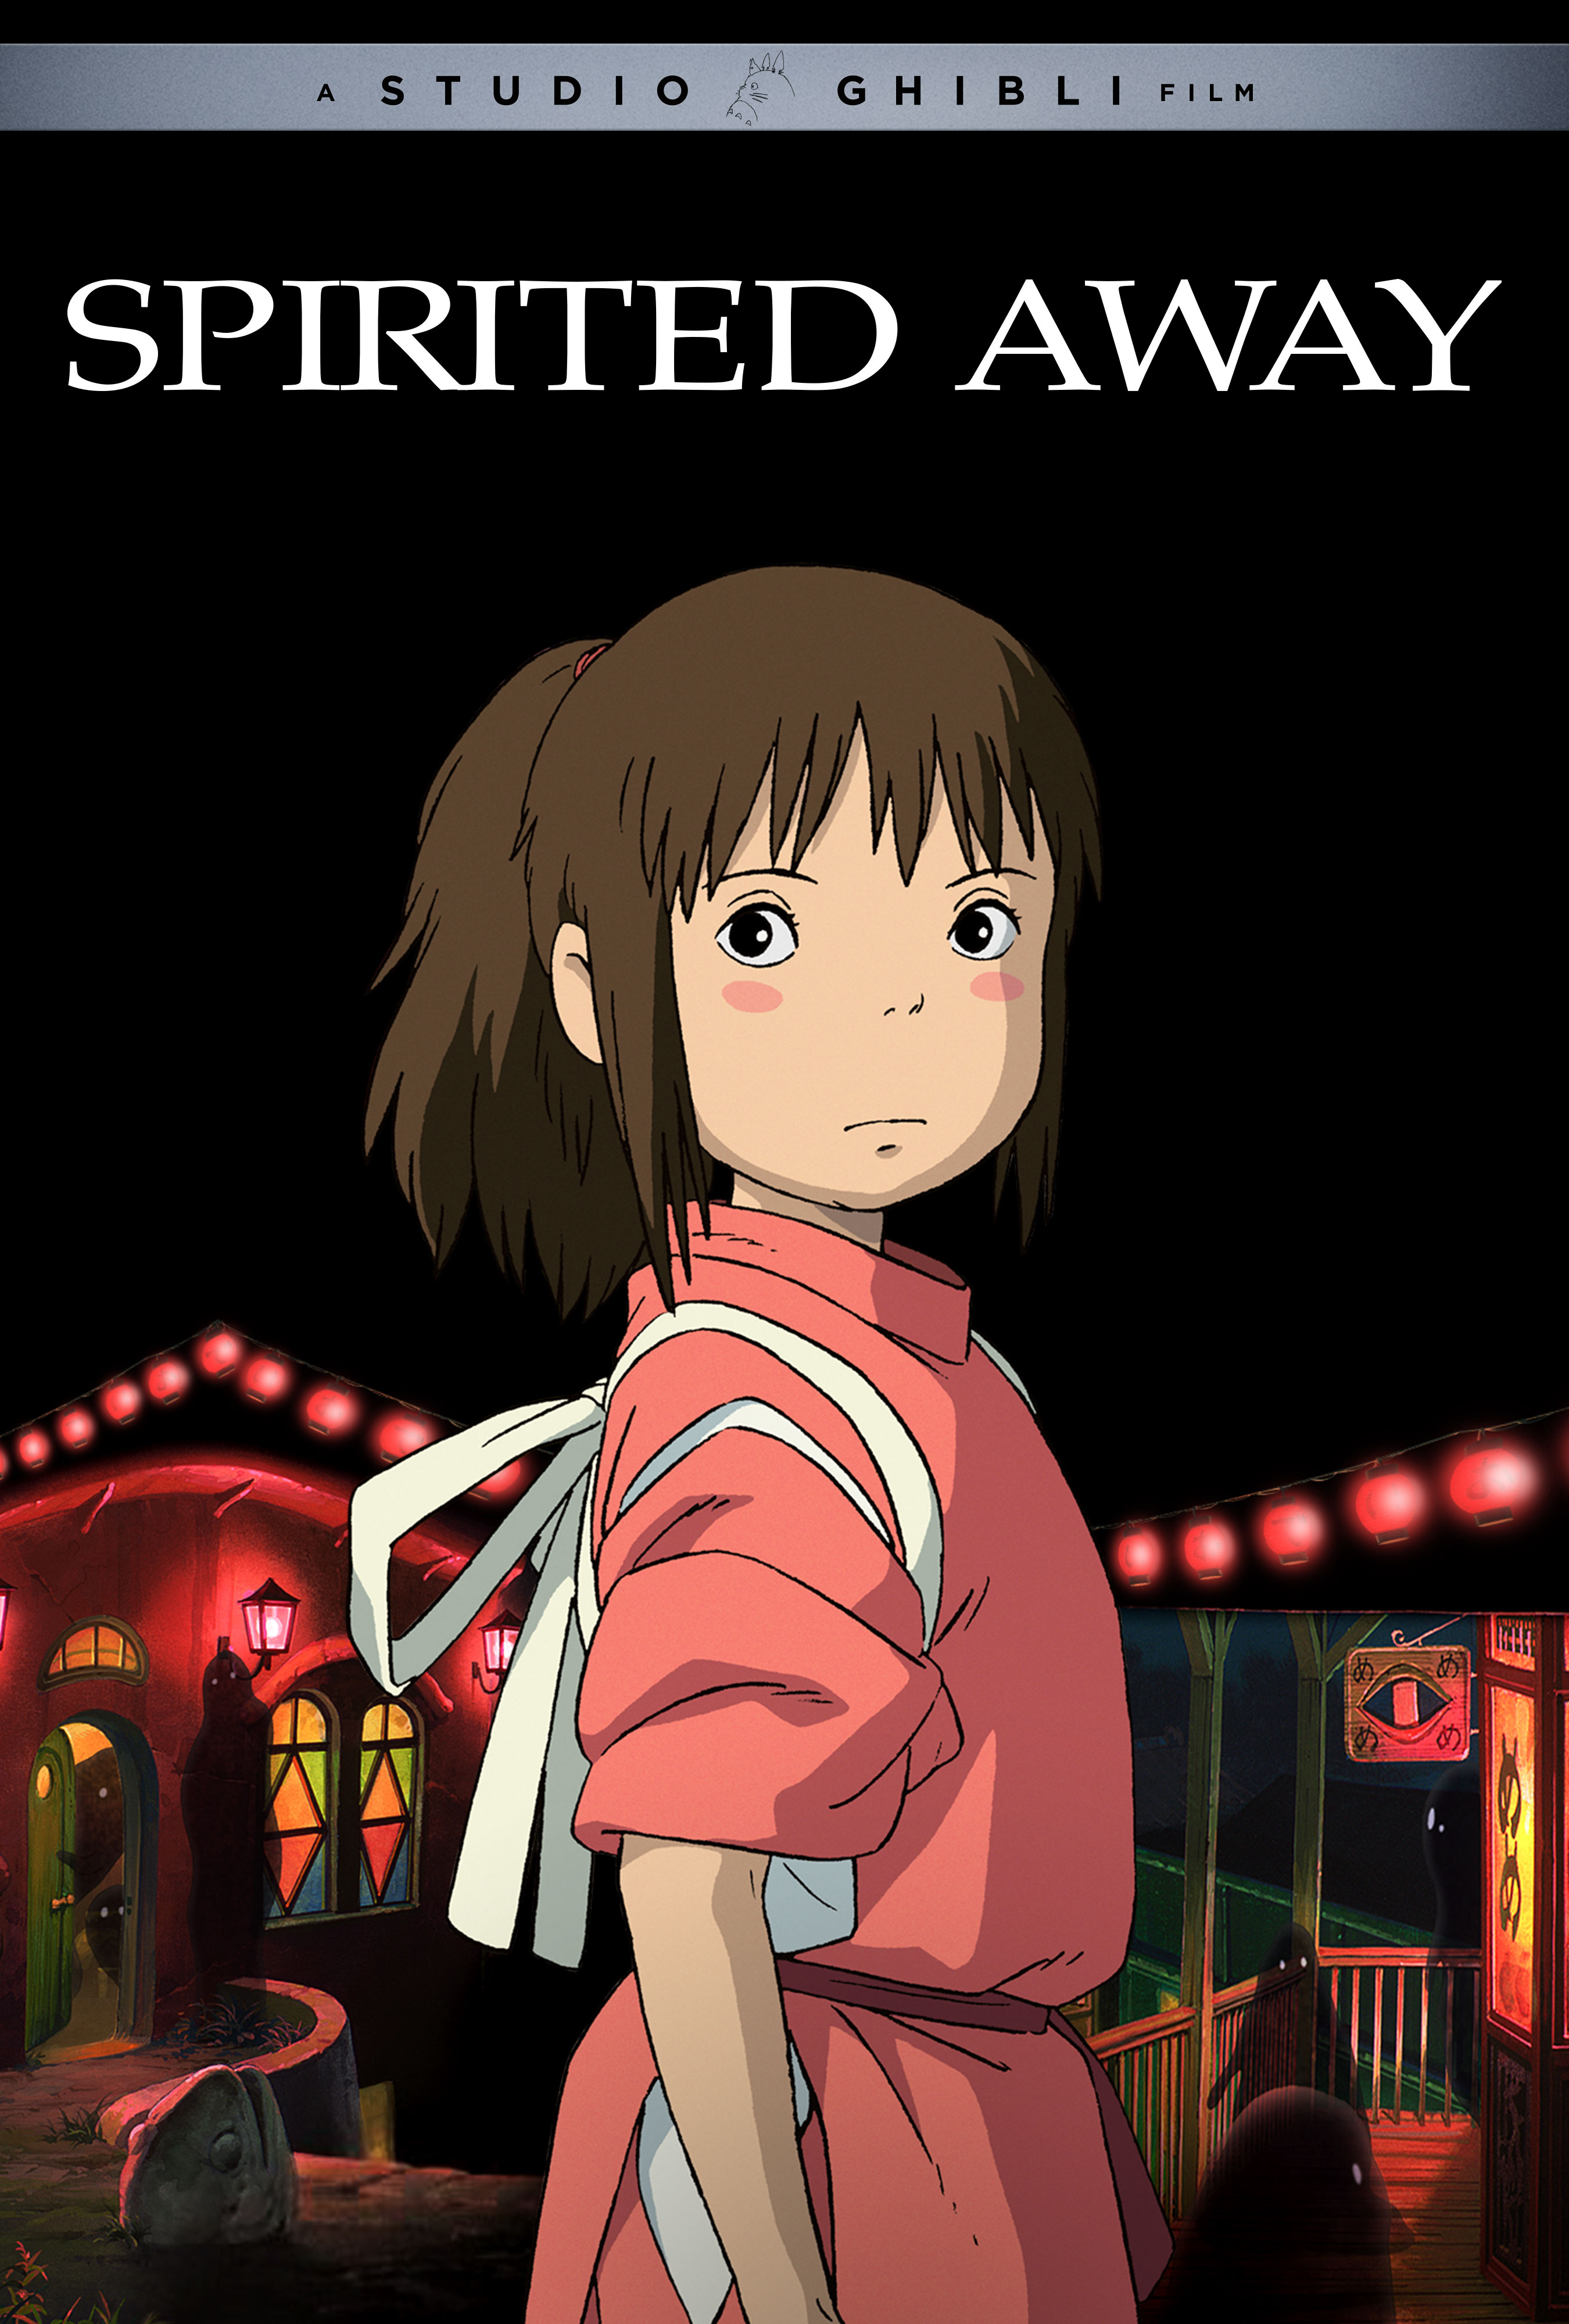 Áp phích sân khấu cho bộ phim hoạt hình chiếu rạp năm 2001 của GKIDS, Spirited Away, có nhân vật chính, một cô gái trẻ được biết đến với cái tên Sen, ăn mặc như một người phục vụ nhà tắm đang đứng trước một khu linh hồn ma quái.